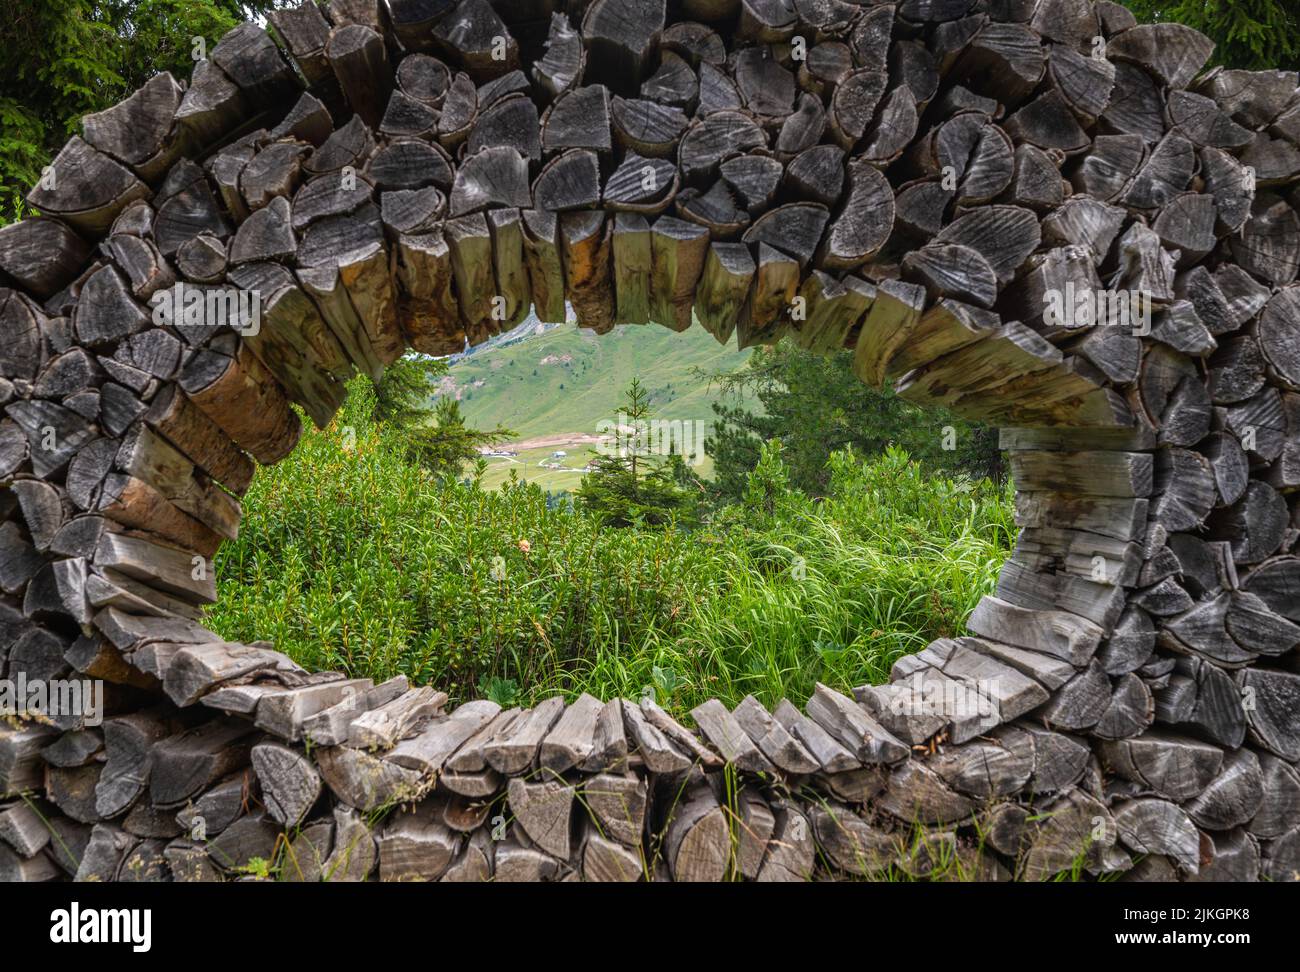 Le installazioni d'arte interagiscono con la natura delle Dolomiti, dichiarata Patrimonio Naturale dell'Umanità dall'UNESCO - Pampeago-Dolomite Trentino, Italia Foto Stock